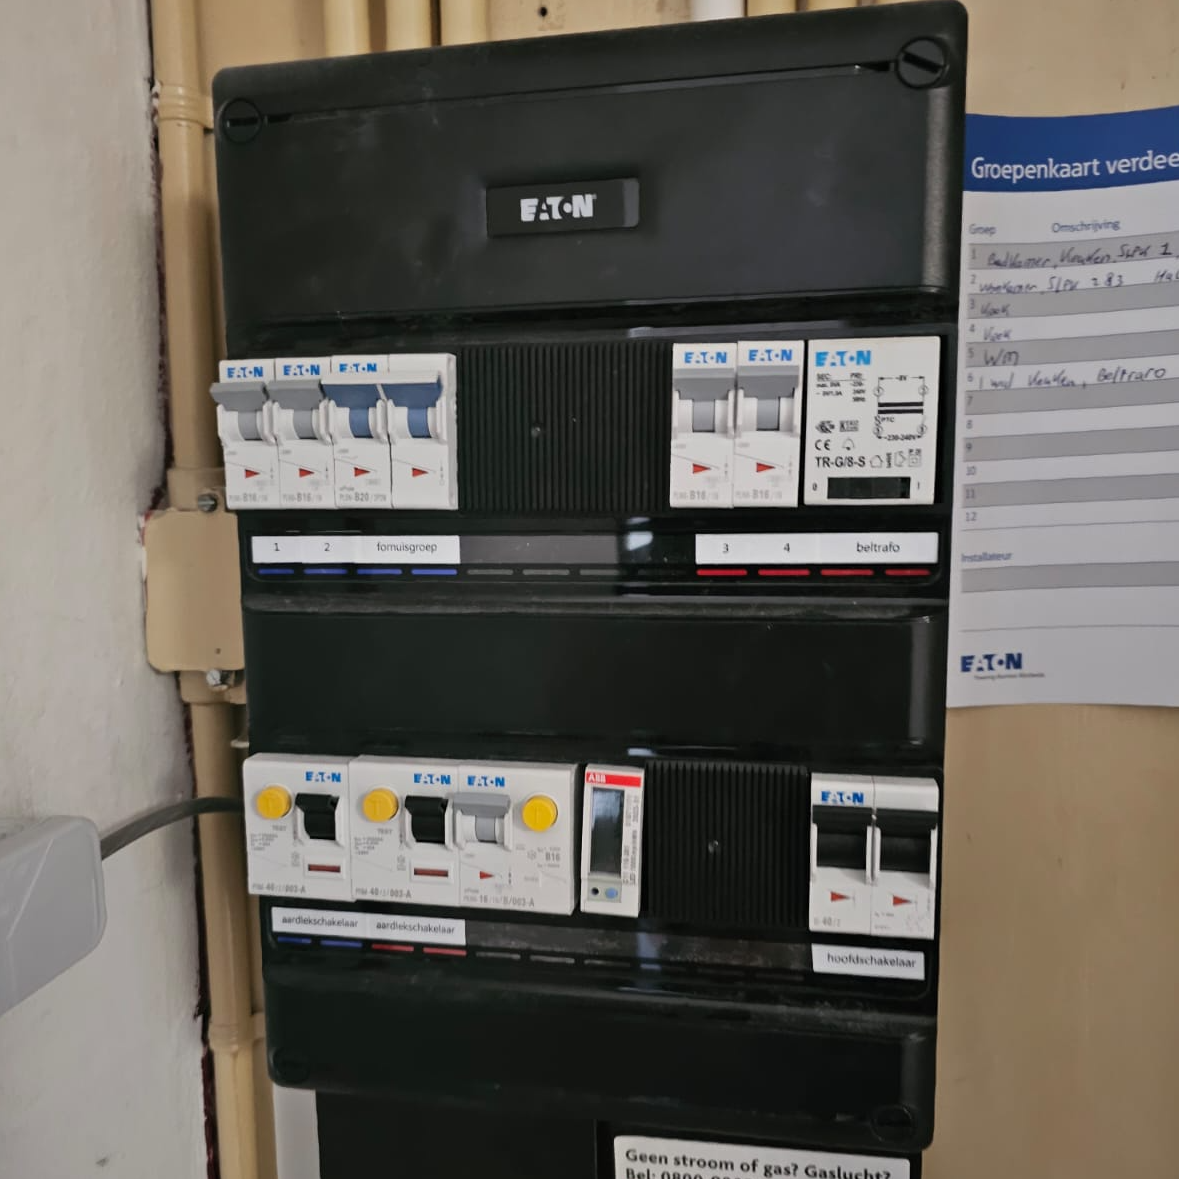 elektra werkzaamheden zoals vervangen van oude meterkast